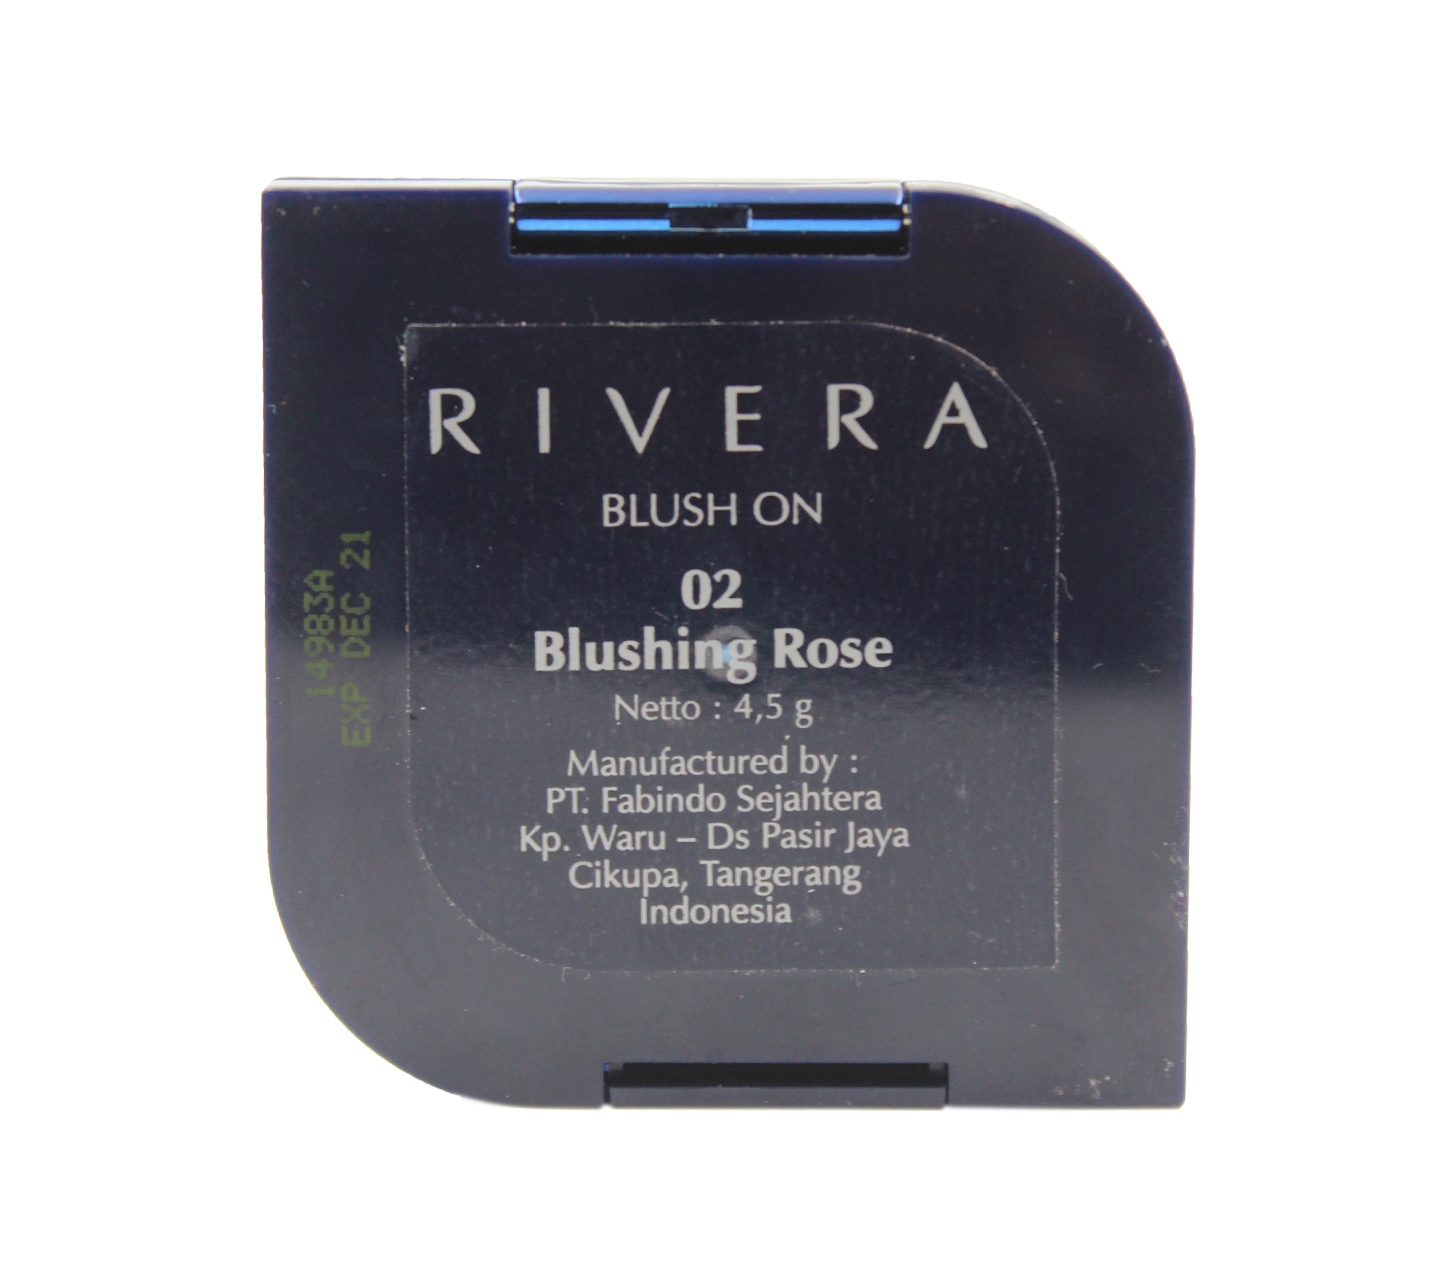 Rivera Blush On 02 Blushing Rose Faces